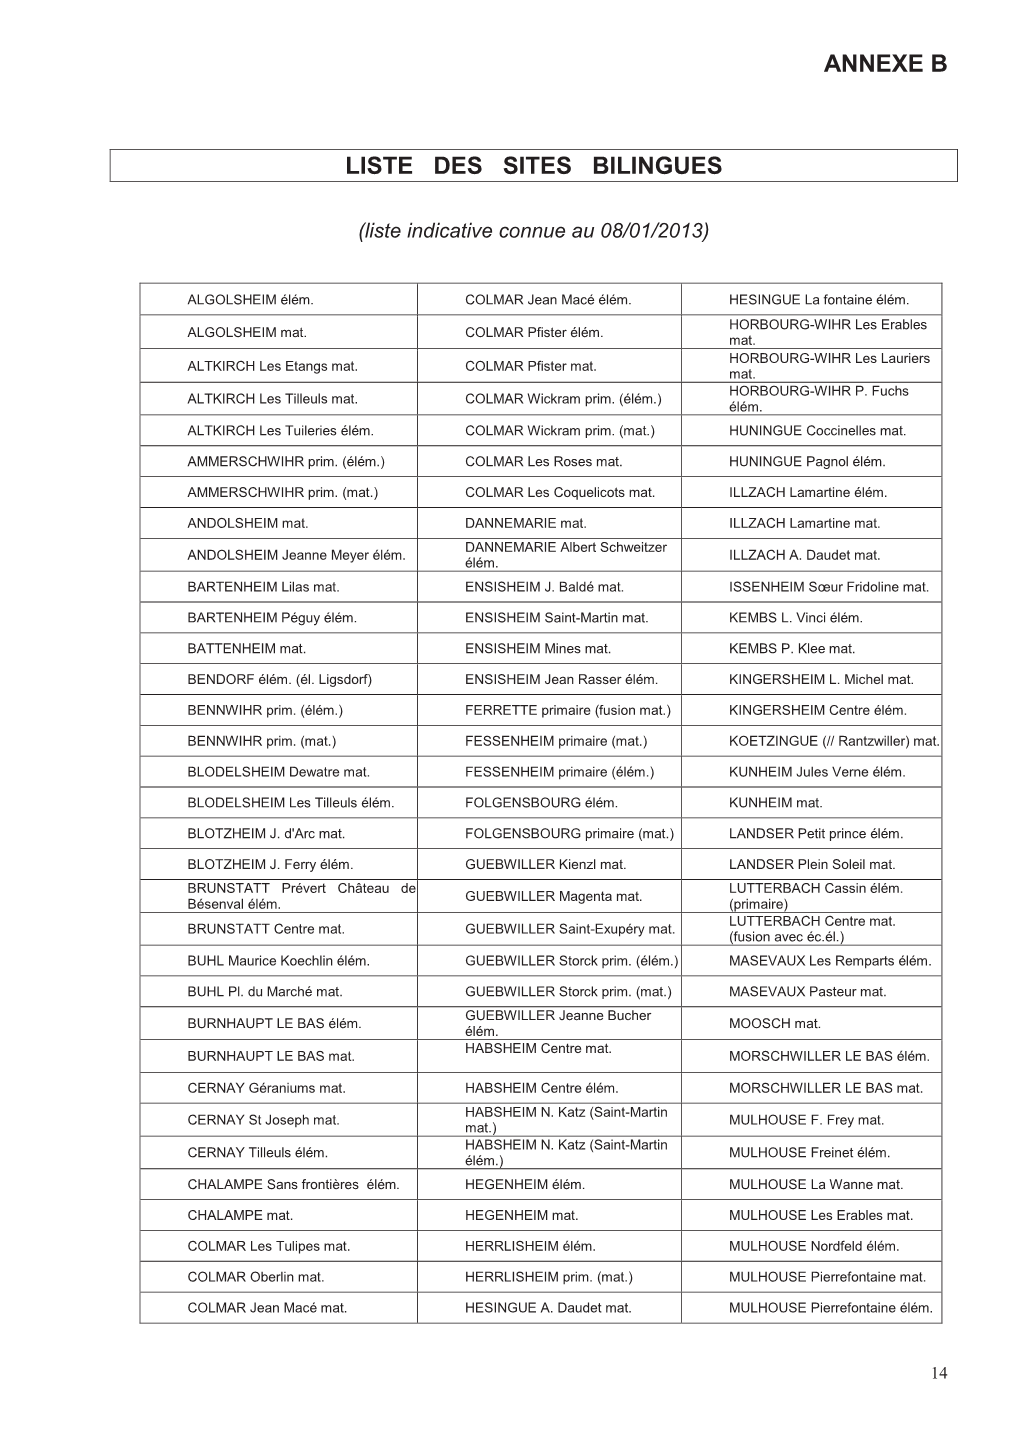 Sites Bilingues Liste Indicative Au 8 Janvier 2013